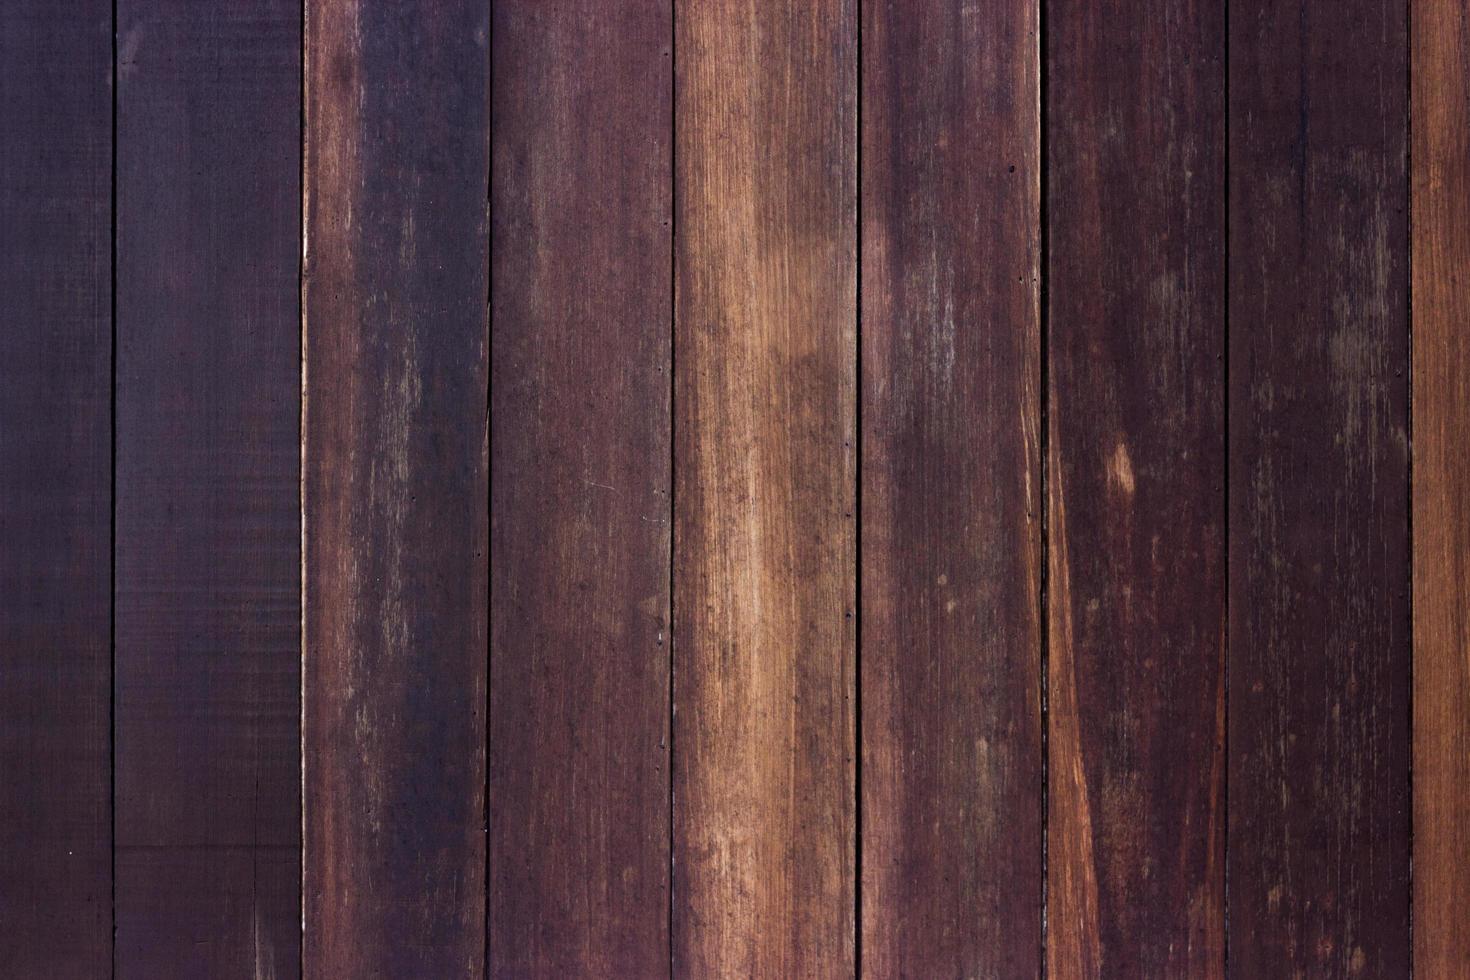 Holzlattenwand für Hintergrund foto